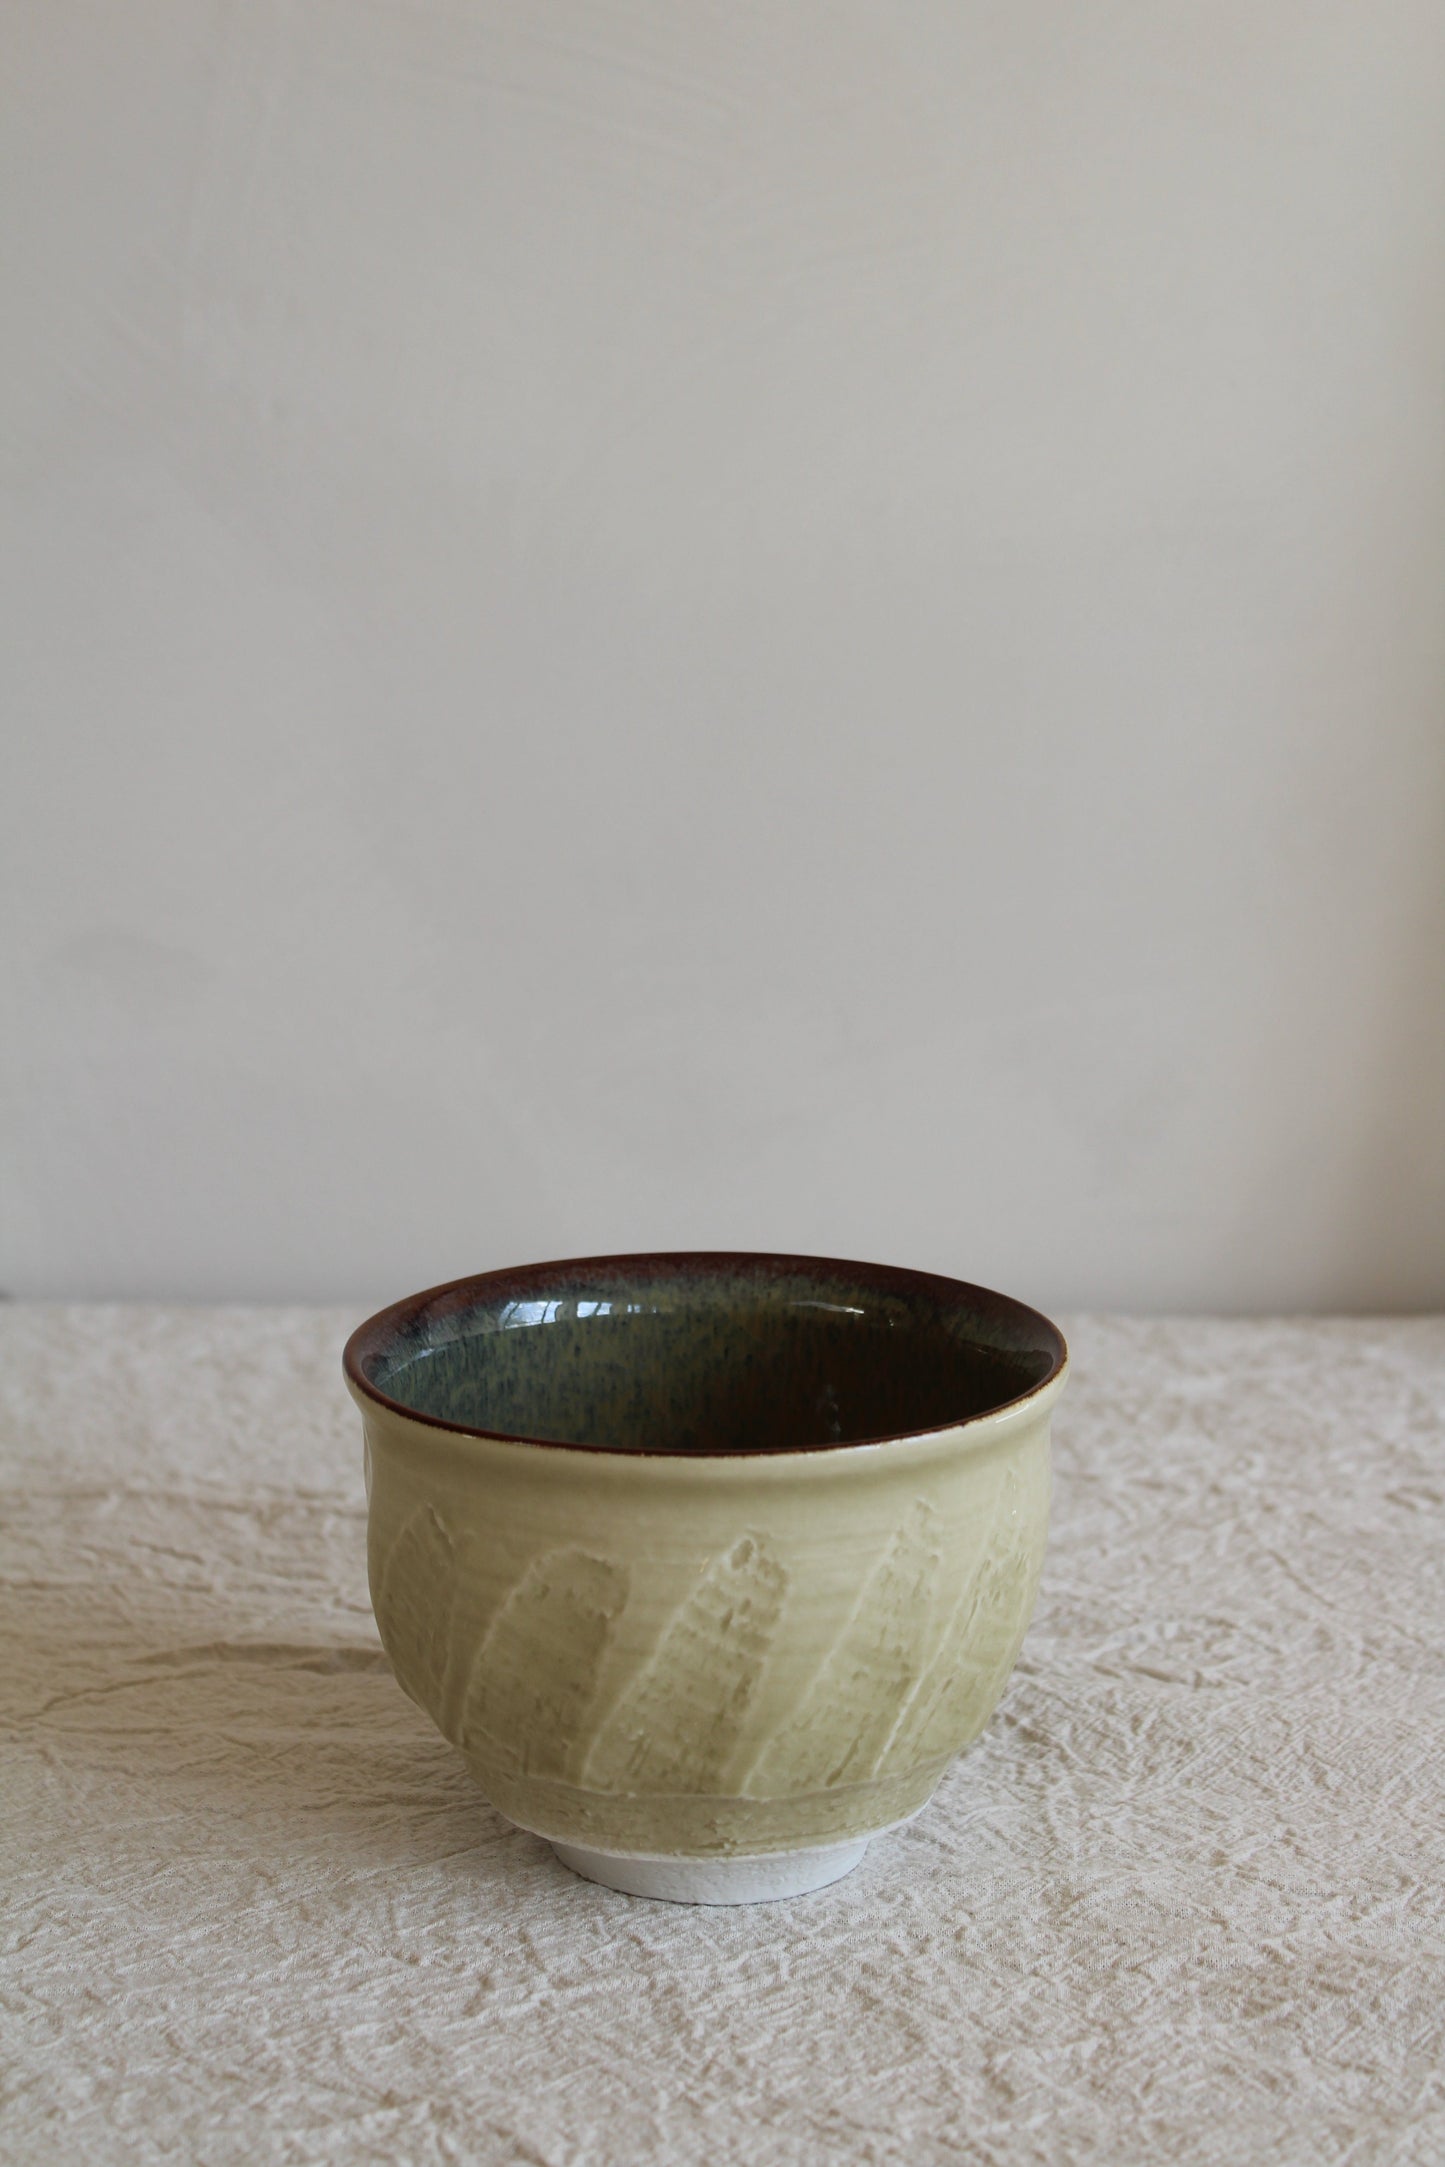 Dashi Bowl Sable by Jars Ceramistes.